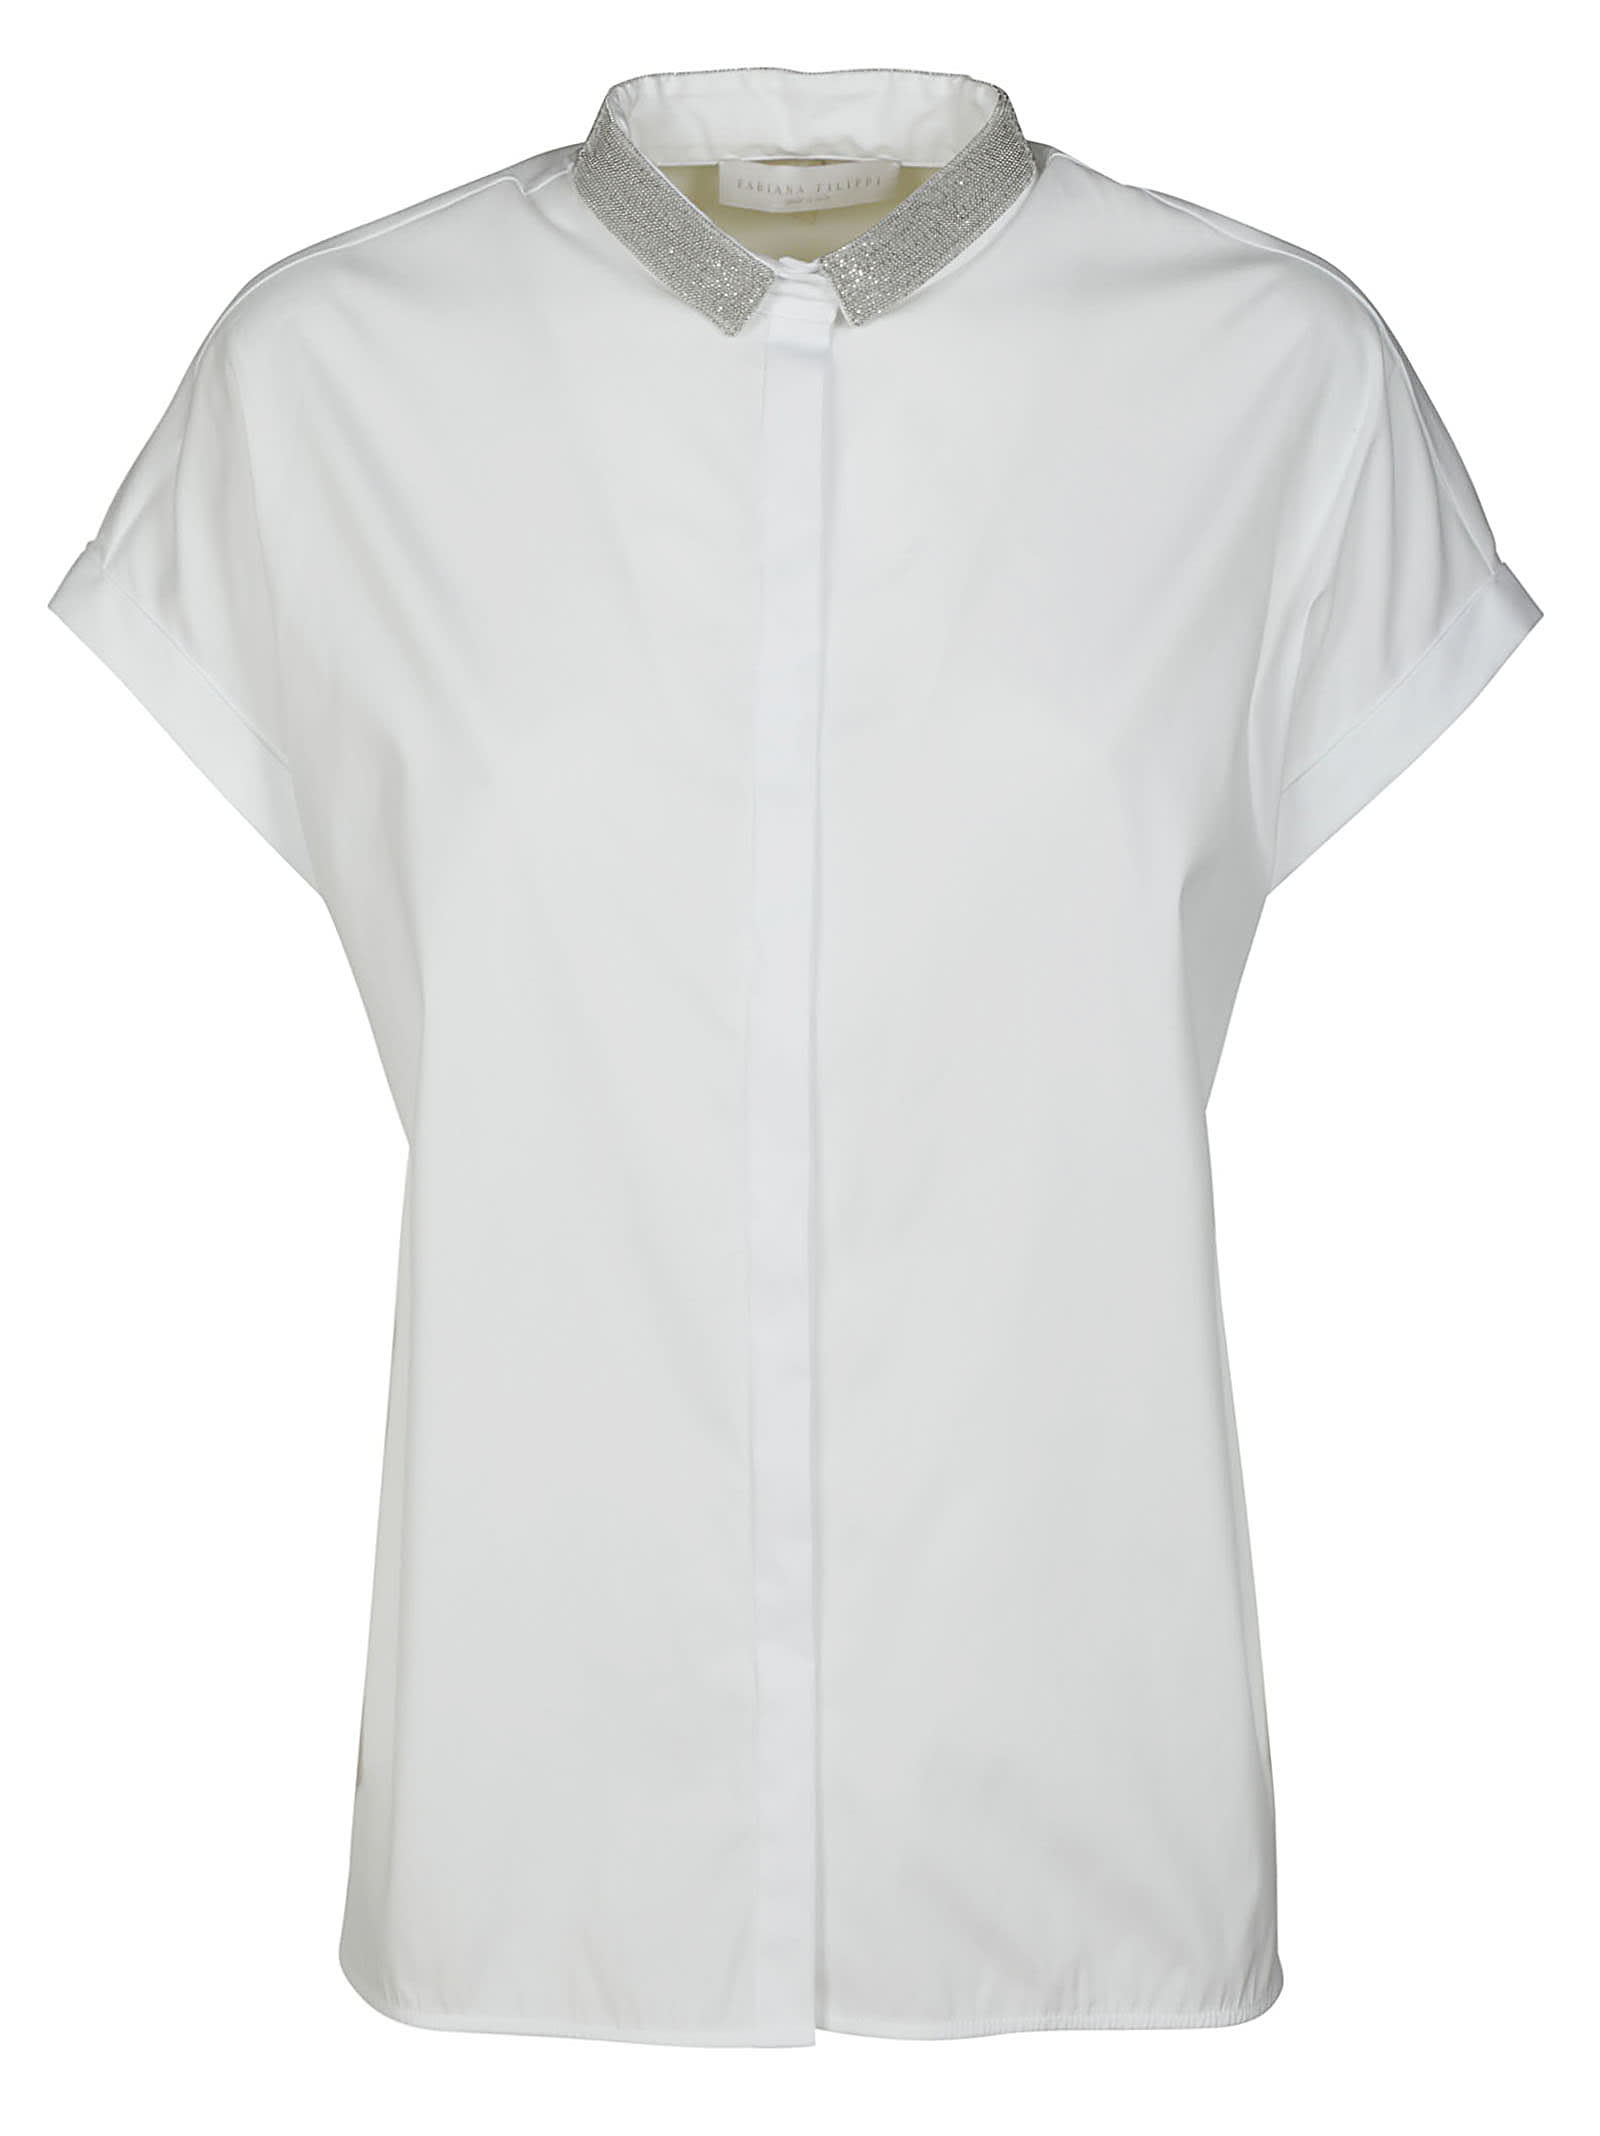 Fabiana Filippi Embellished Collar Short Sleeve Shirt